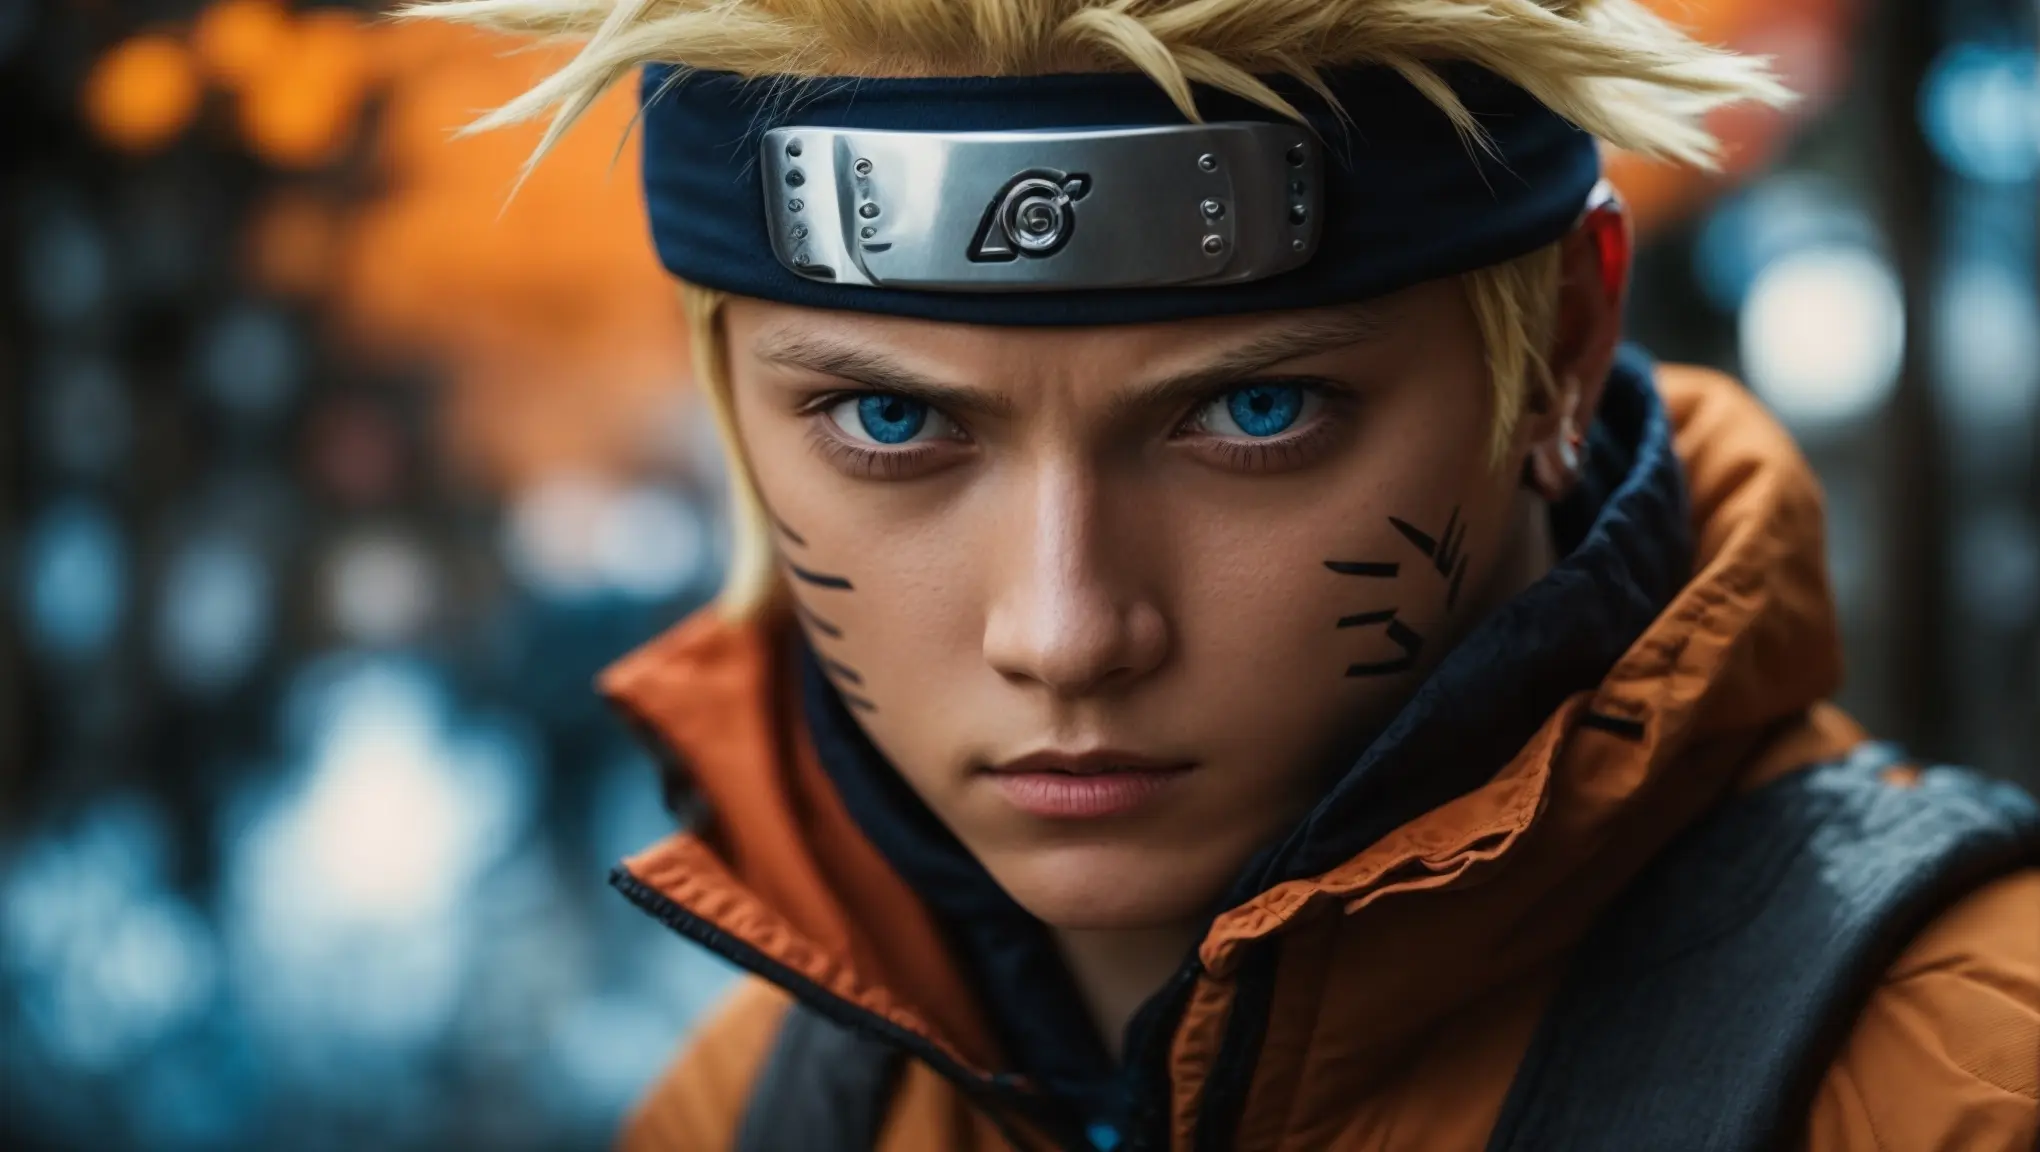 MagiCinema - Filmes, Séries e Entretenimento!: CONFIRMADO! Naruto vai  ganhar uma série e um novo filme